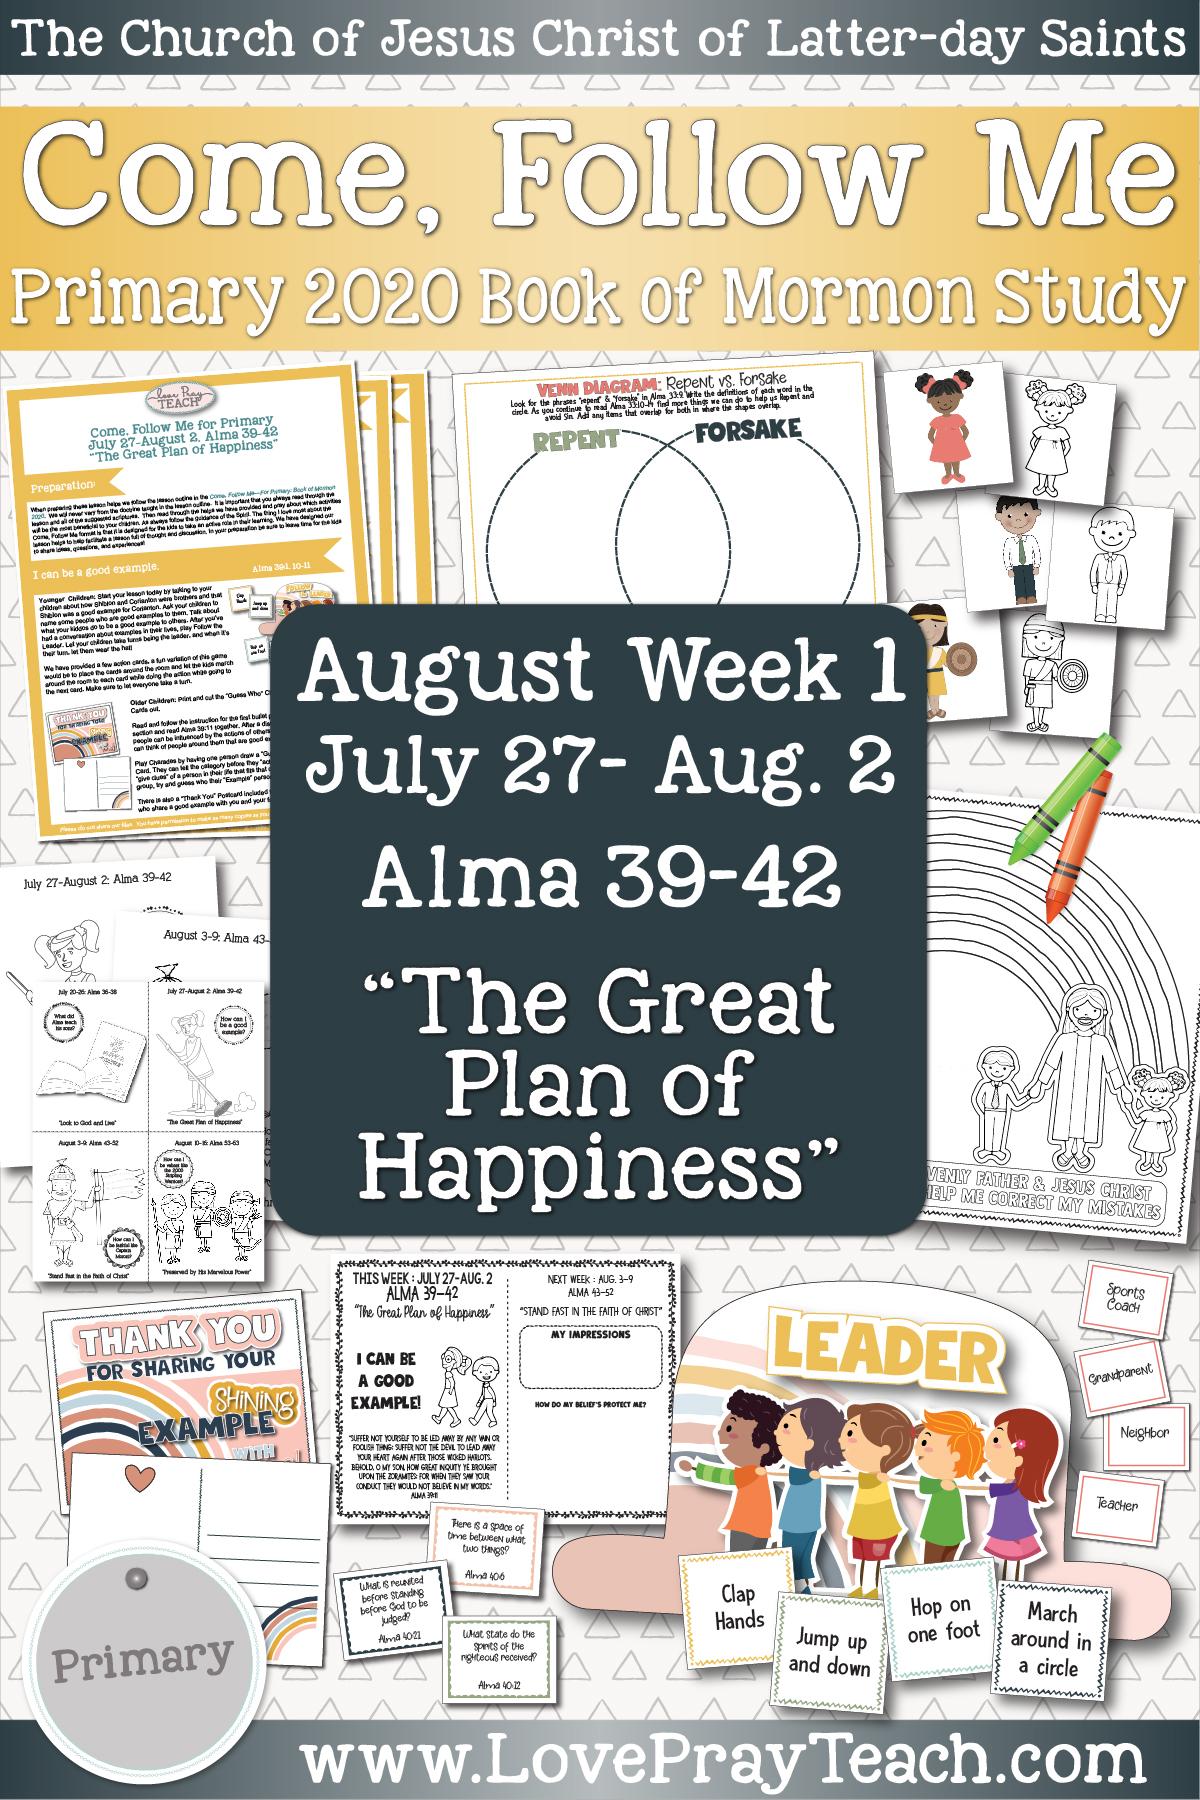 Week of July 27 - August 2